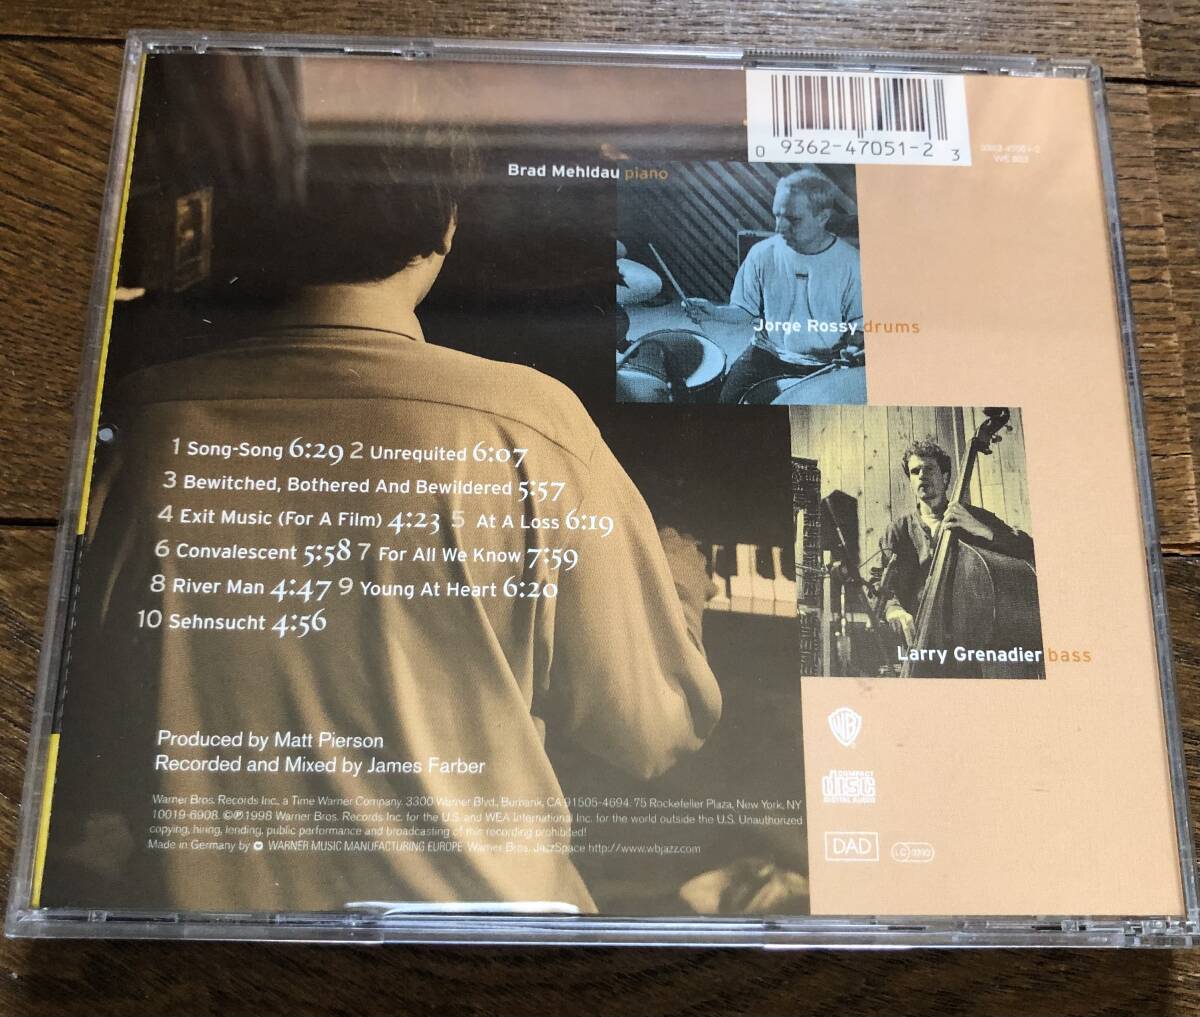 CD-Apr / ベイarner Bros. / Brad Mehldau Songs / The Art of the Trio Vol.3 